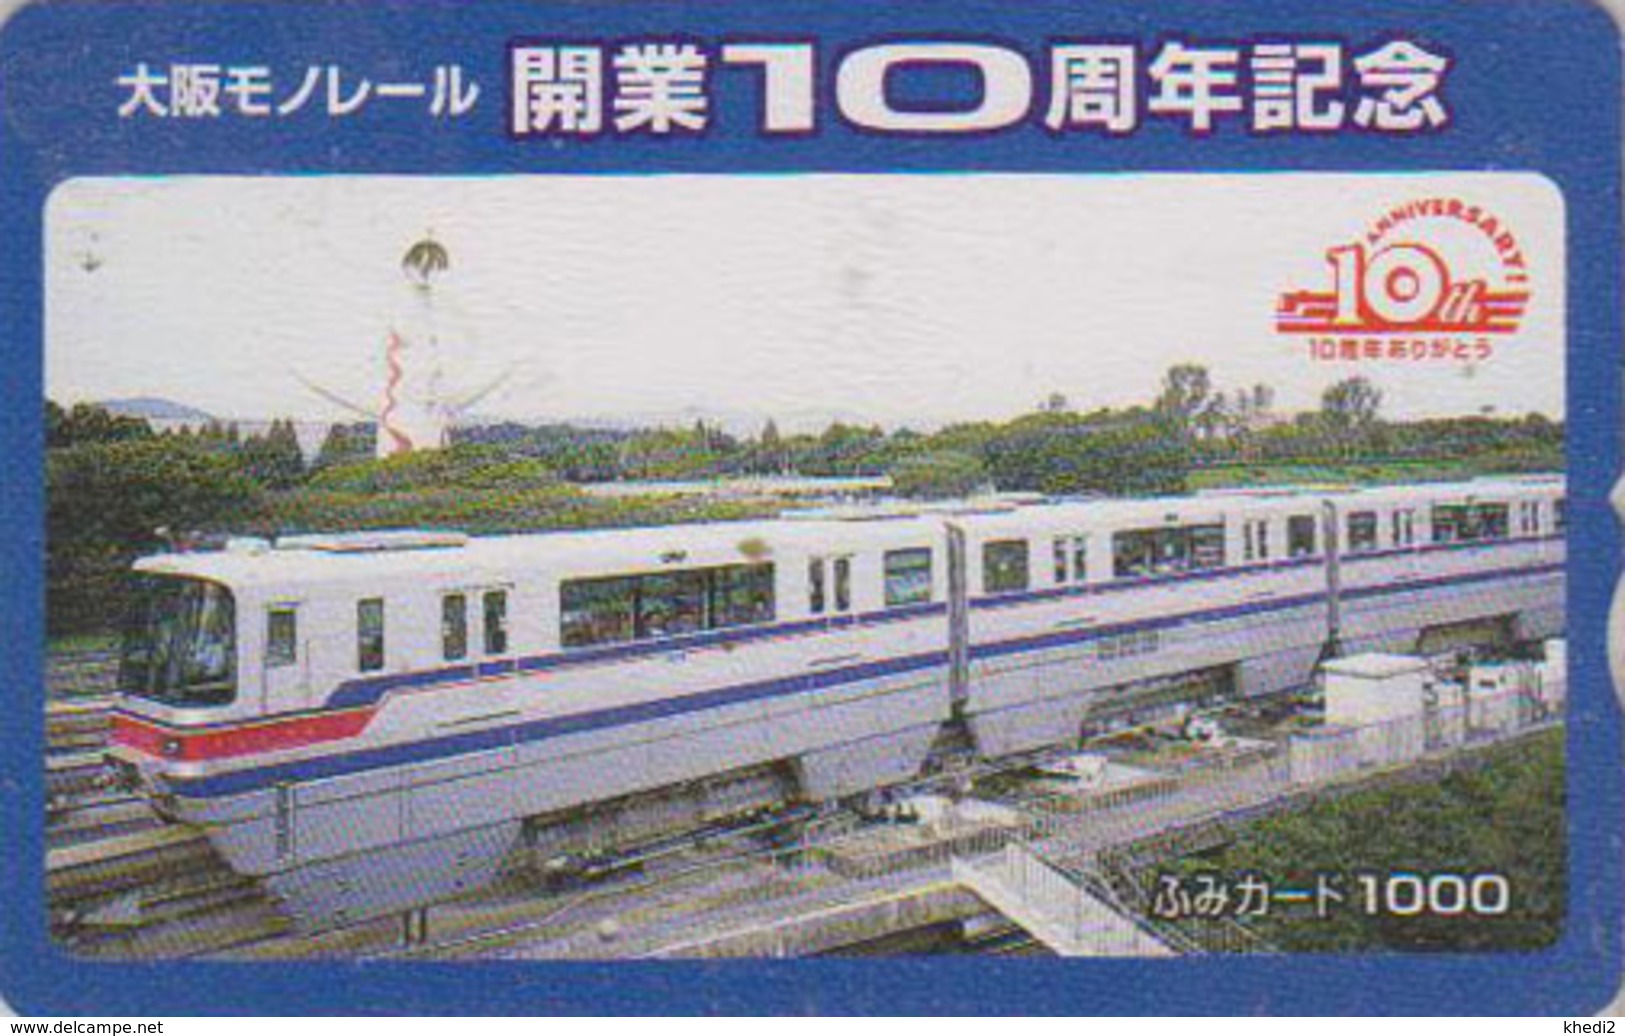 Carte Prépayée Japon - TRAIN MONORAIL - ZUG Eisenbahn - TREIN - Japan Prepaid Fumi Card - 3316 - Faros